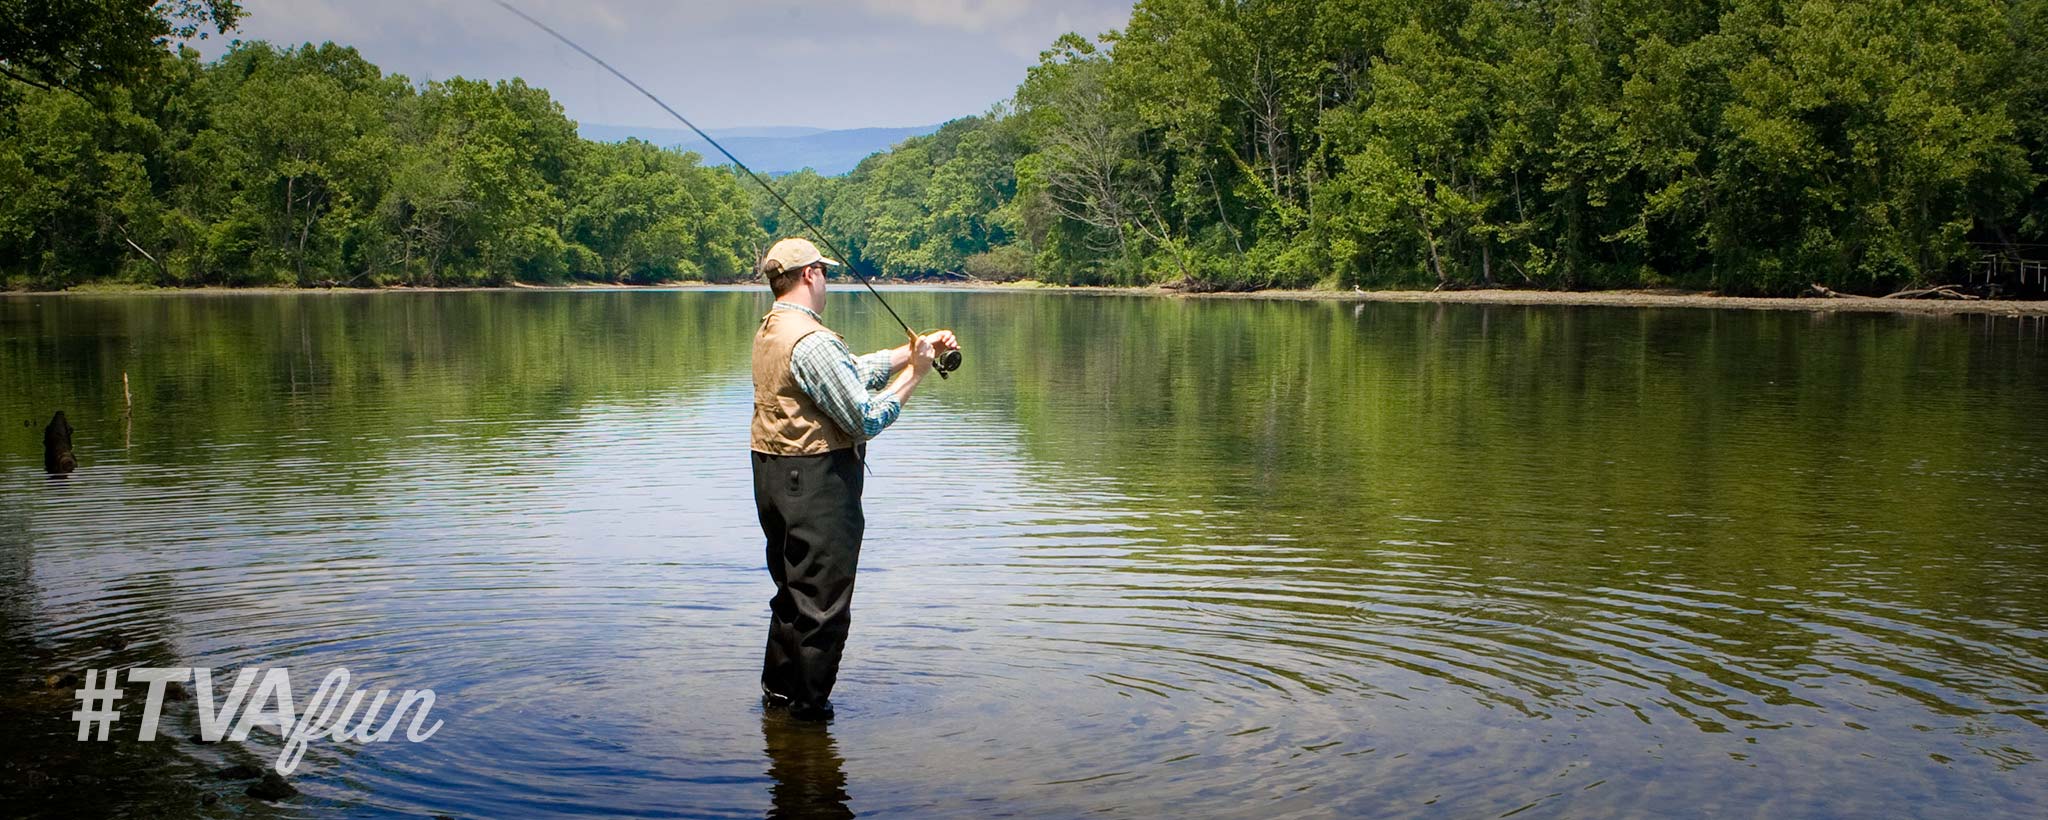 Man Fishing in a lake